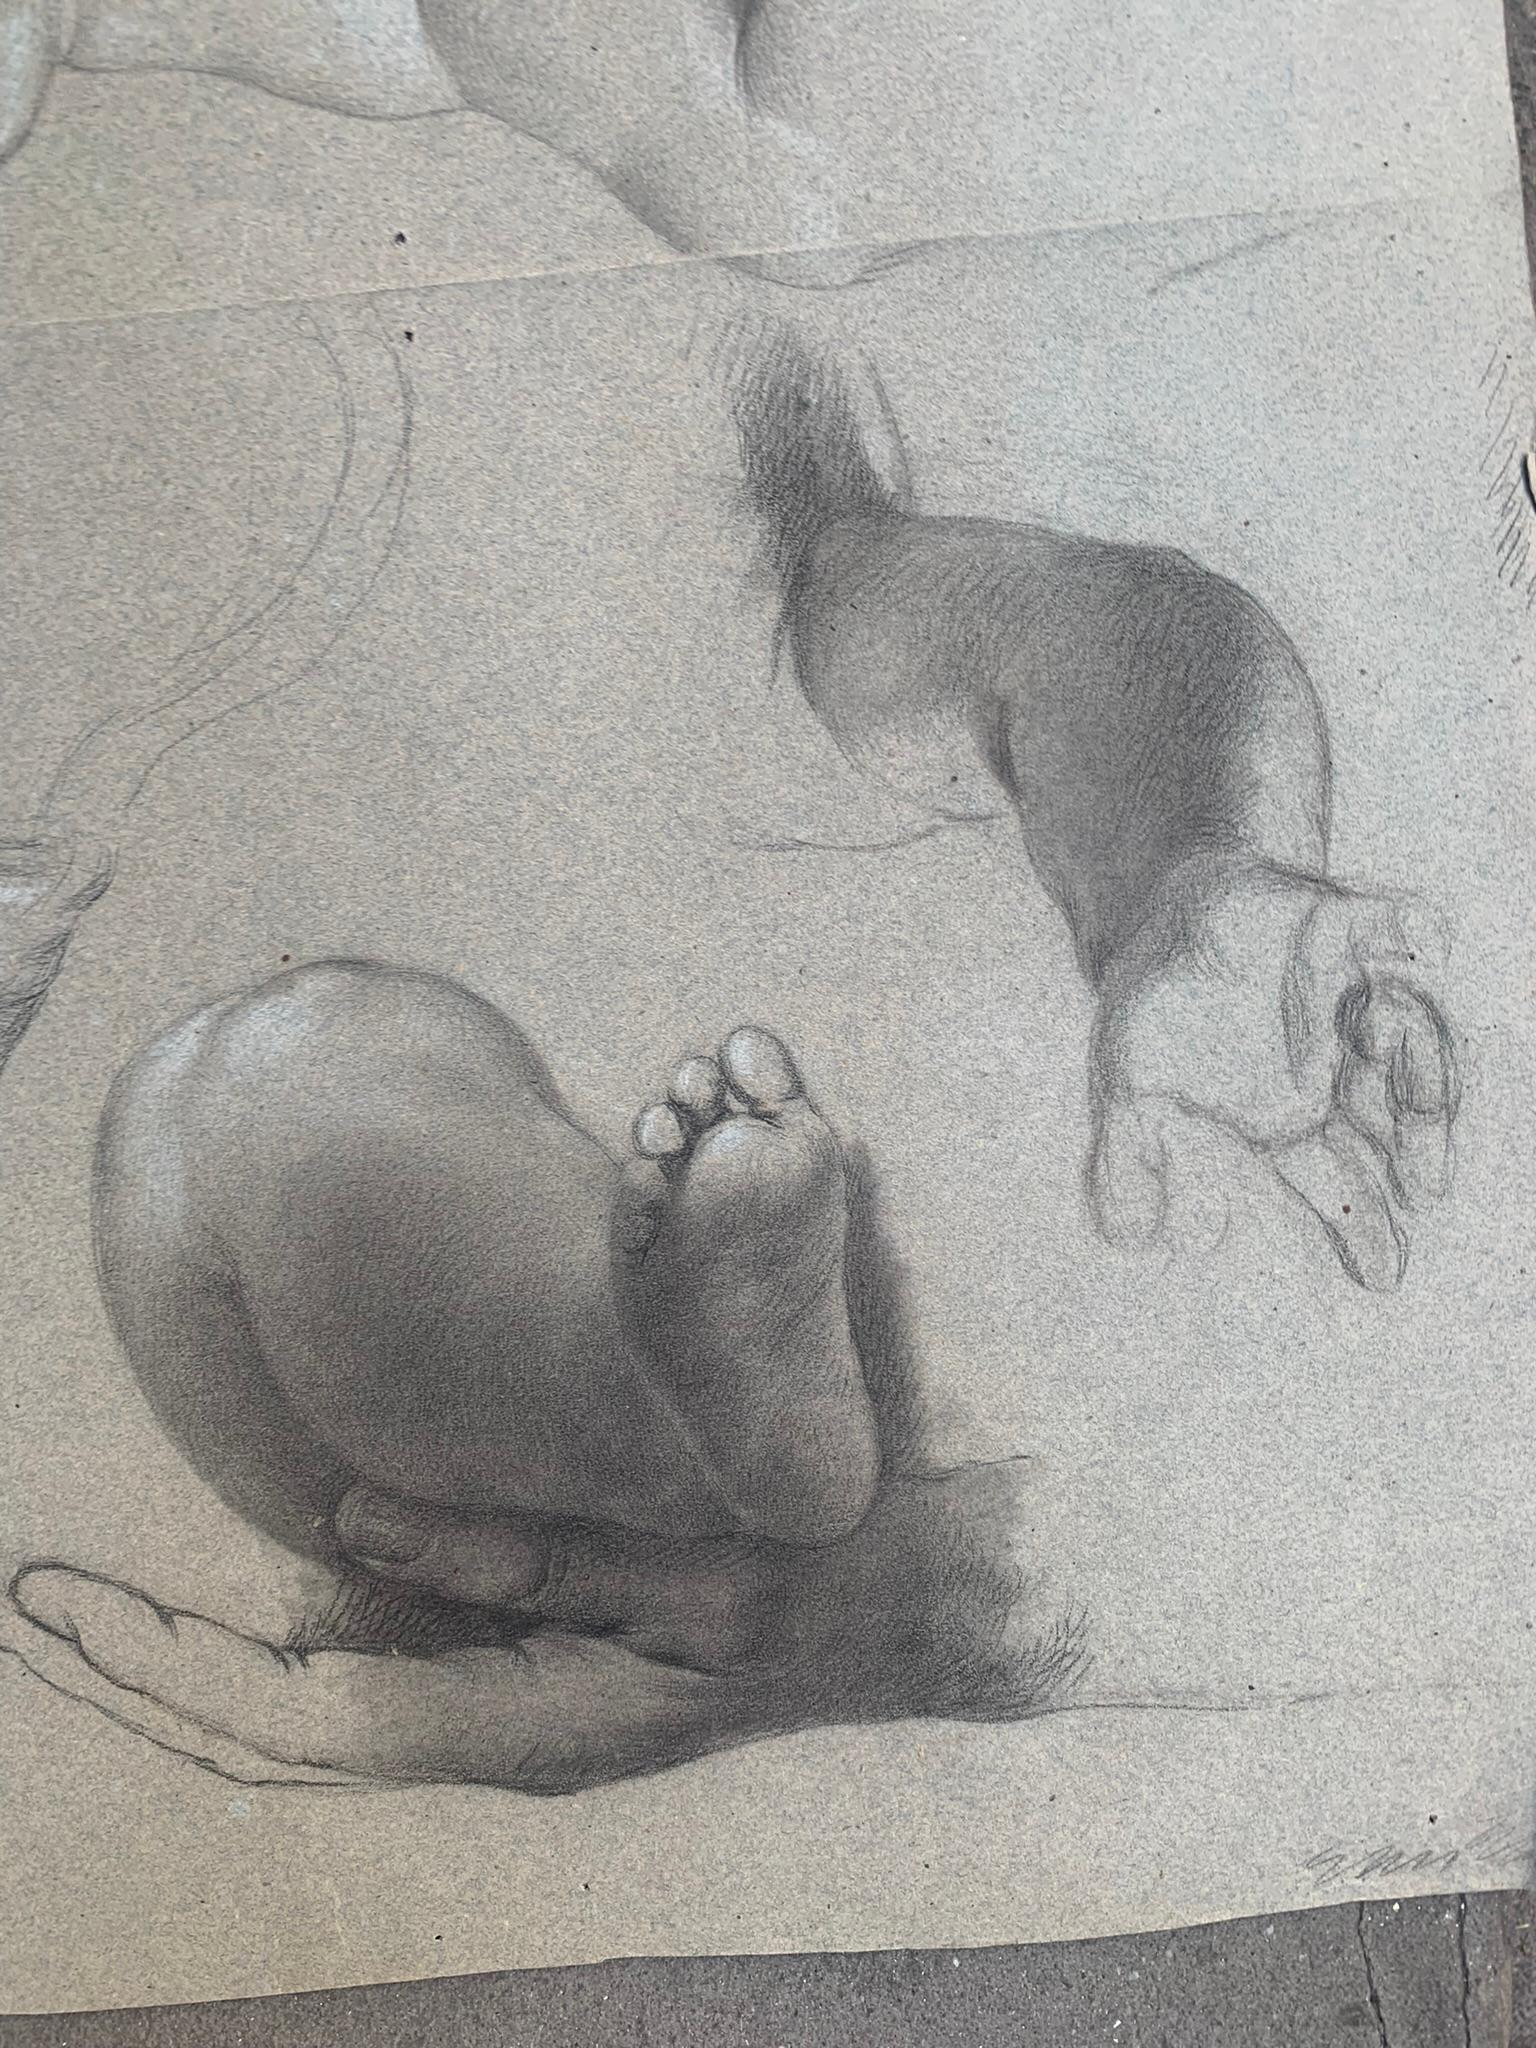 Akademische Untersuchung der Hände und Füße eines Kindes.
Neunzehntes Jahrhundert.
Zeichnung auf leicht bläulich-grauem Papier. Anatomische Studien sind Vorbereitungen für ein Gemälde oder Fresko mit Kindern oder Engeln.
Auf der anderen Seite